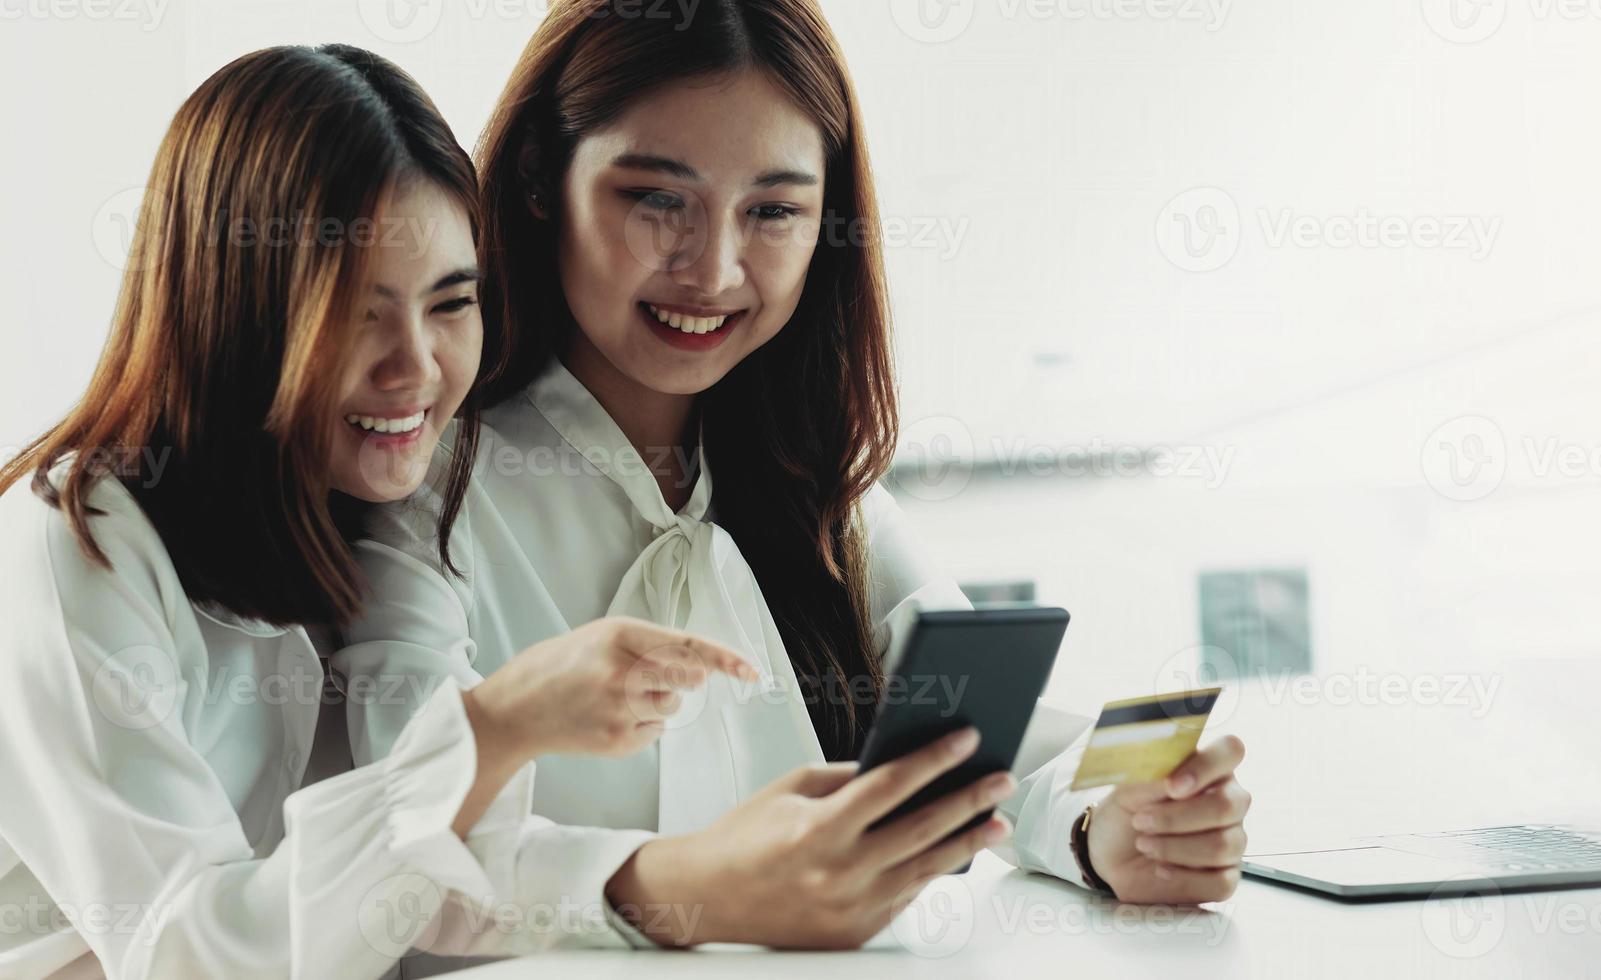 dos jóvenes asiáticas tienen tarjetas de crédito y felizmente usan sus teléfonos móviles para comprar en línea. concepto de negocio y tecnología marketing digital estilo de vida casual foto